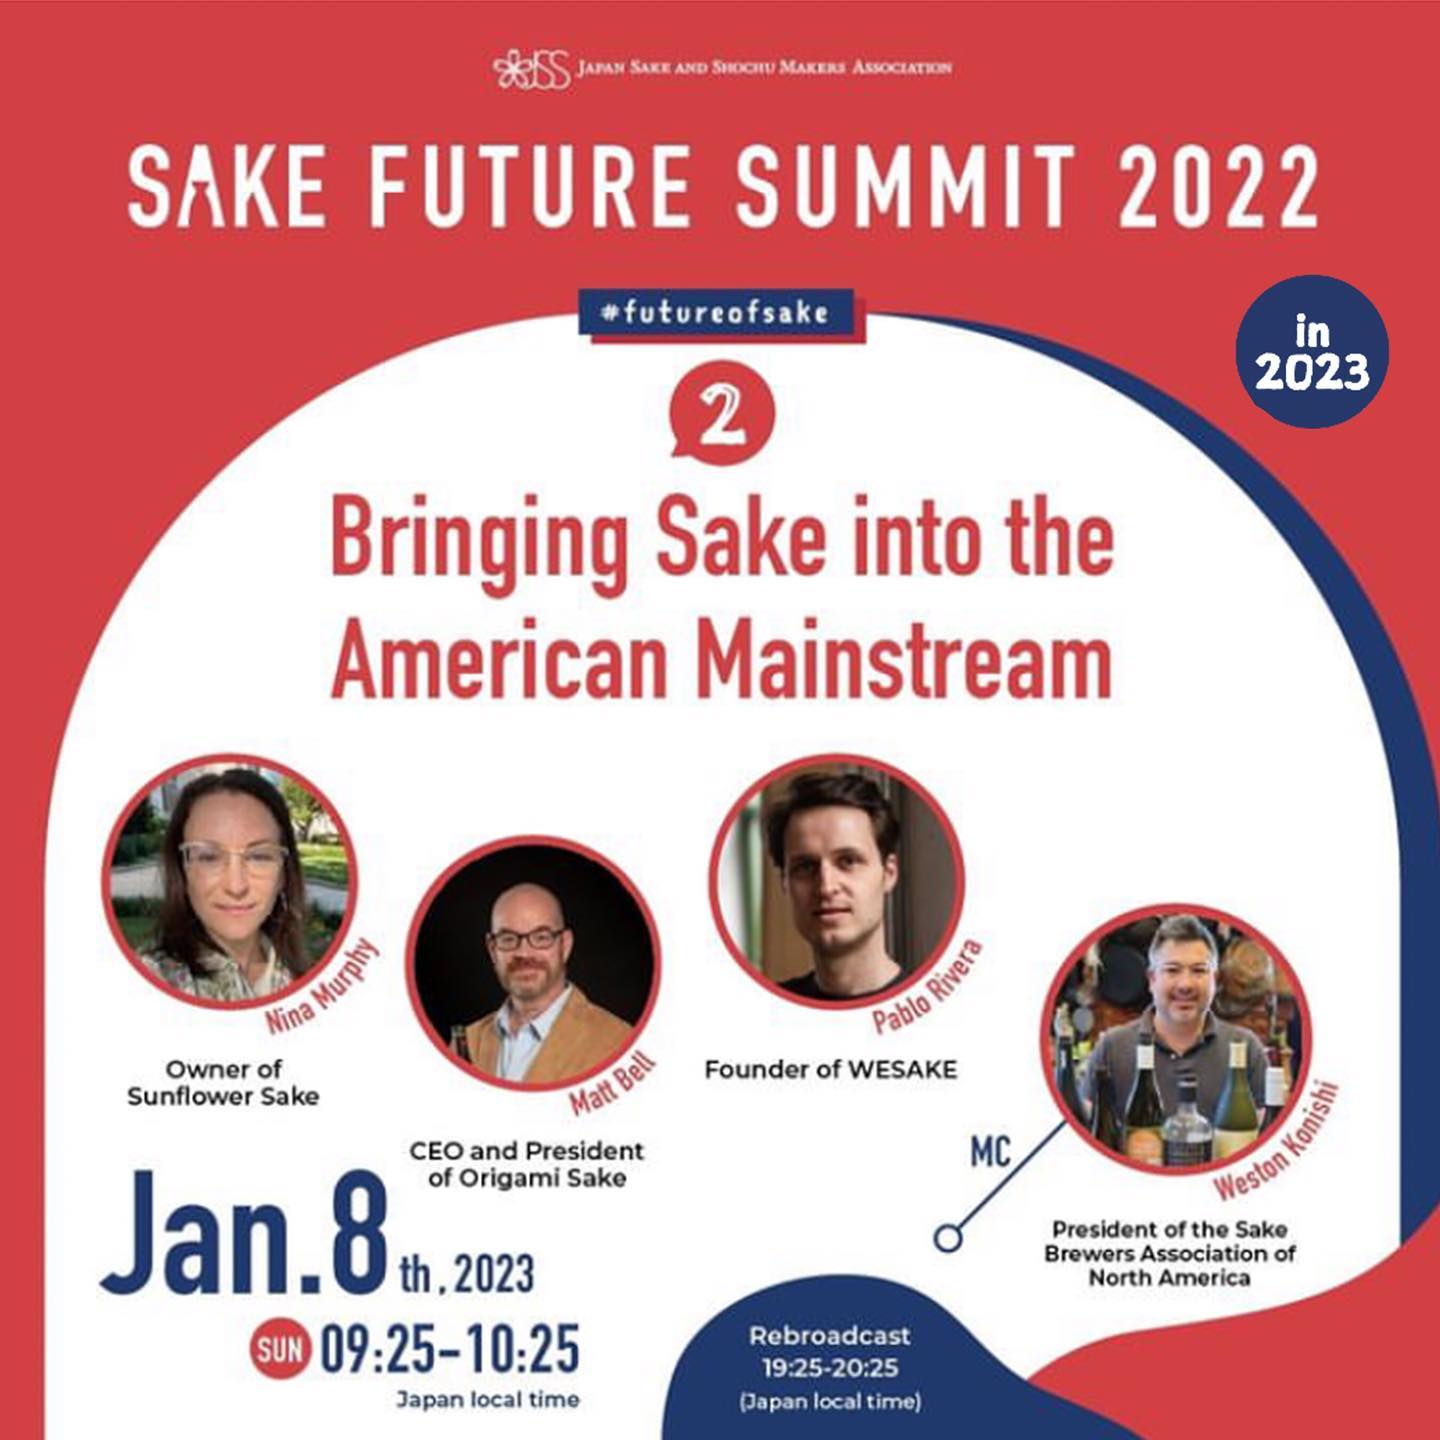 Bringing Sake into the American Mainstream (Sake Future Summit 2022)